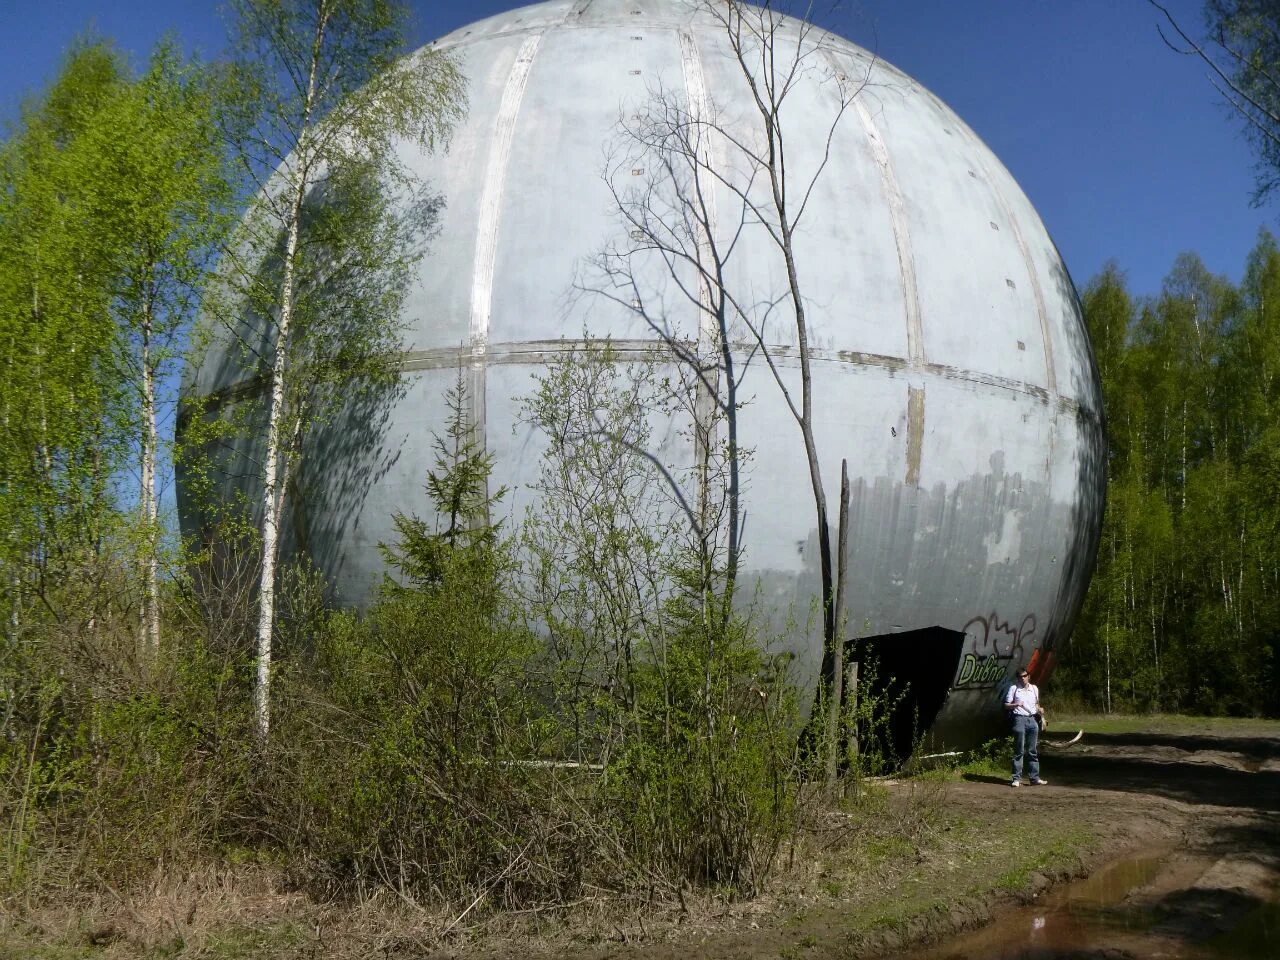 Шар купол Дубна. Советская радиолокационная станция Дубна шар. Дубна шар в лесу. Дубна РЛС шар.